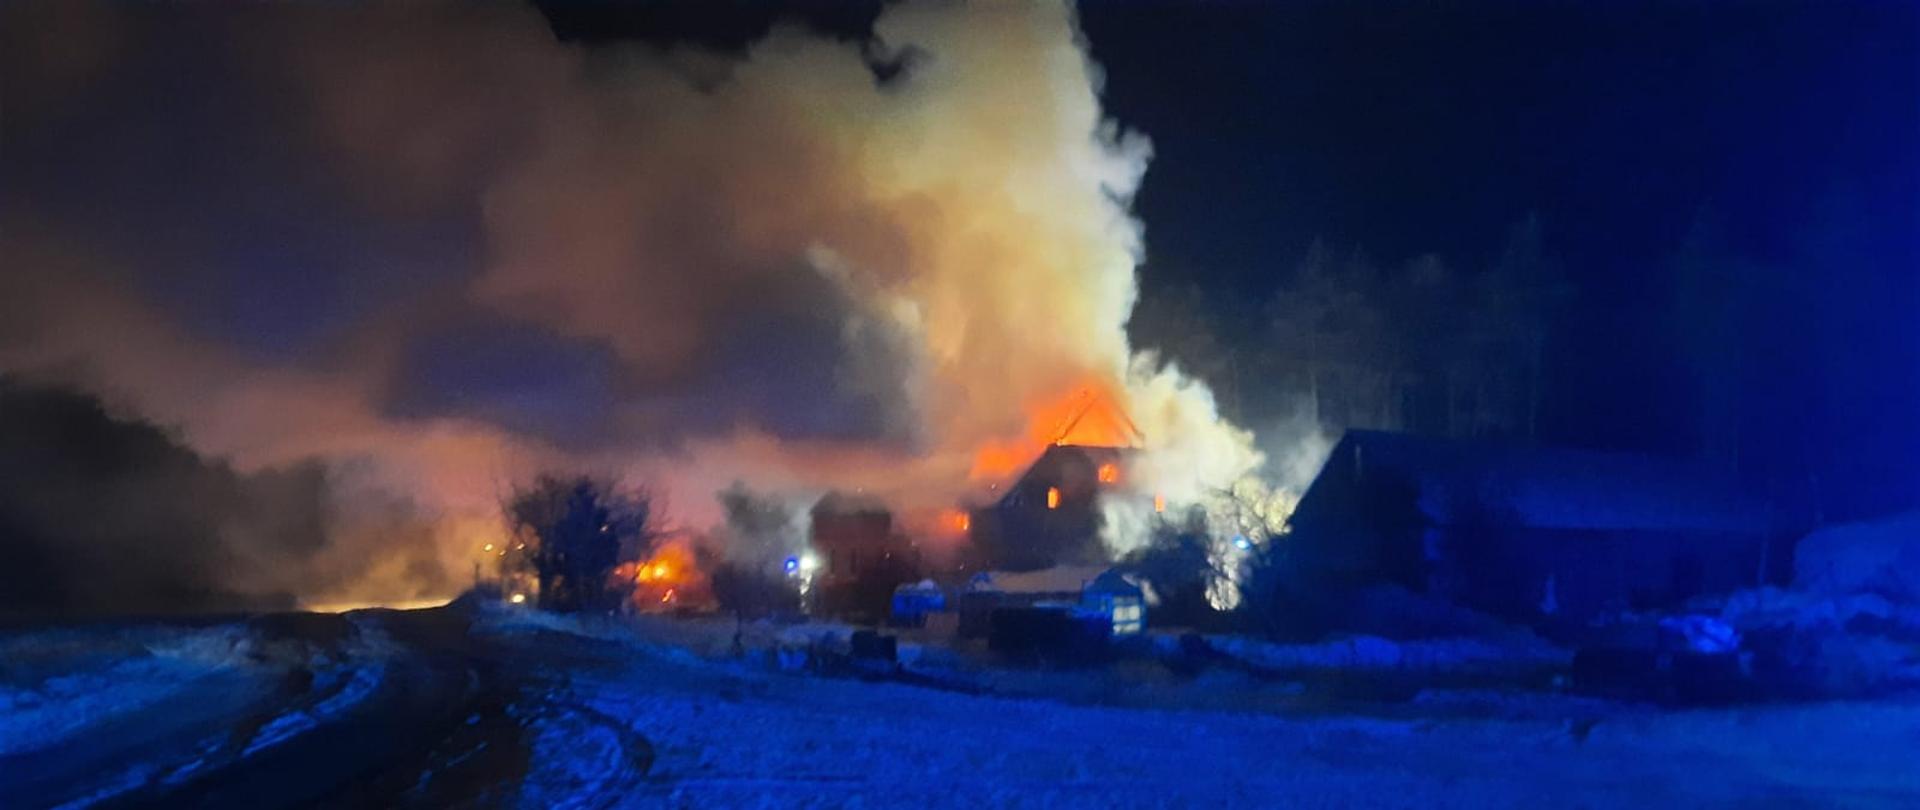 widok płonącego domu z oddali, na zdjęciu widoczne płomienie wychodzące z dachu